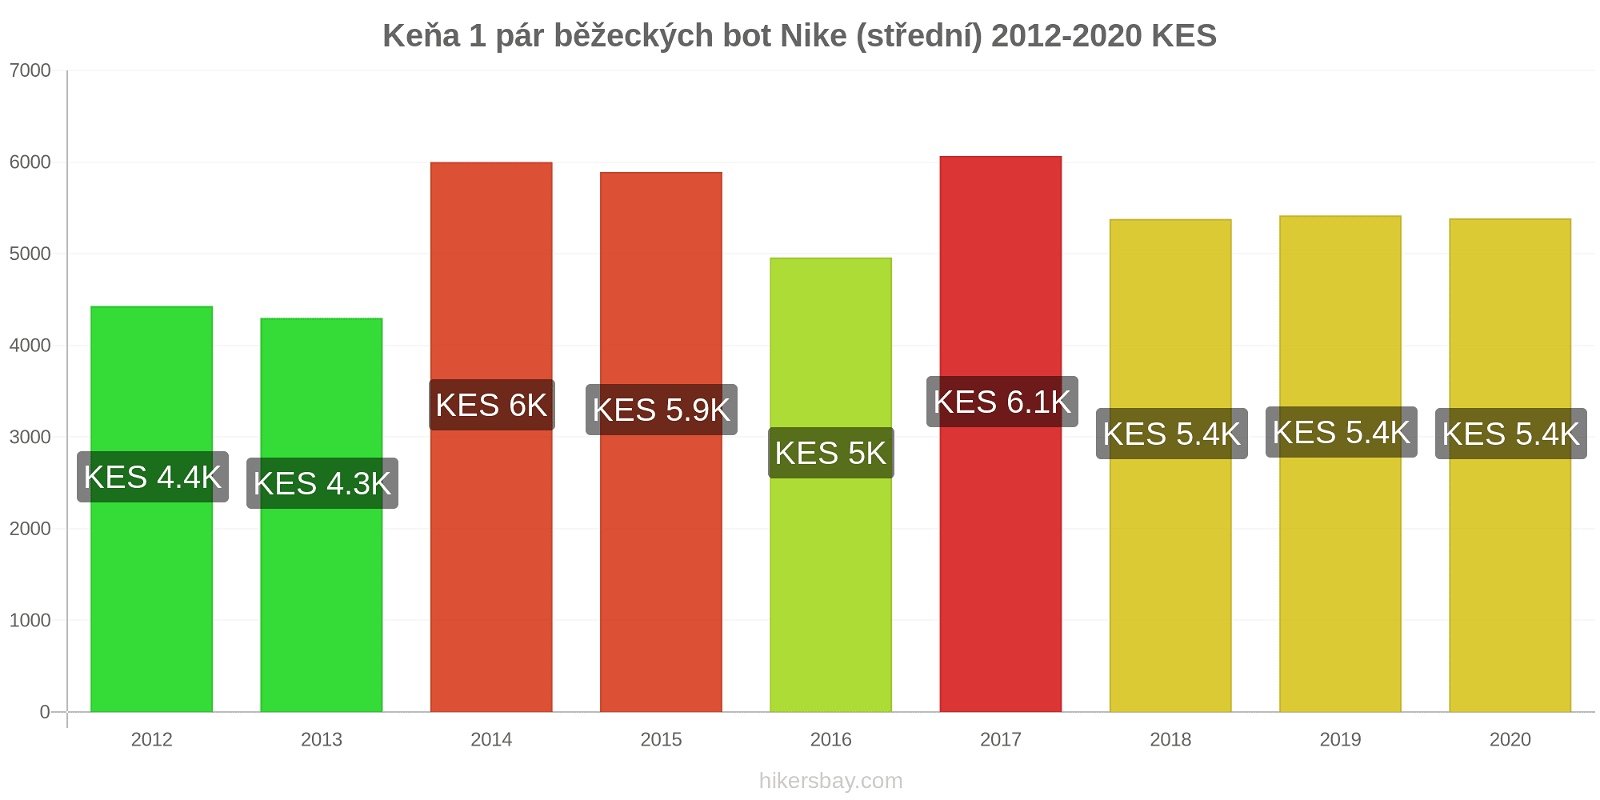 Keňa změny cen 1 pár běžeckých bot Nike (střední) hikersbay.com